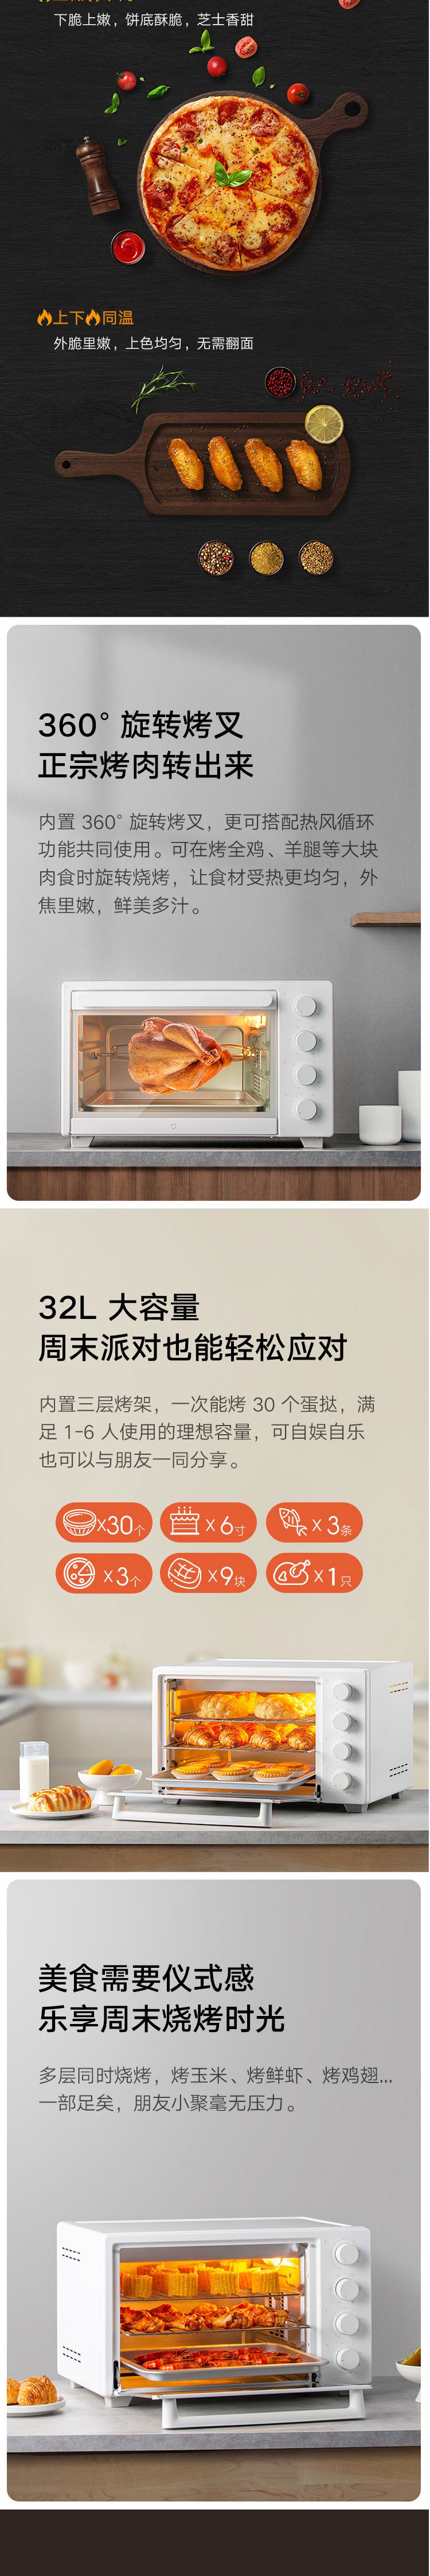 小米/MIUI 米家电烤箱32L 三层烤位 上下独立控温内置烤叉 家用烤箱